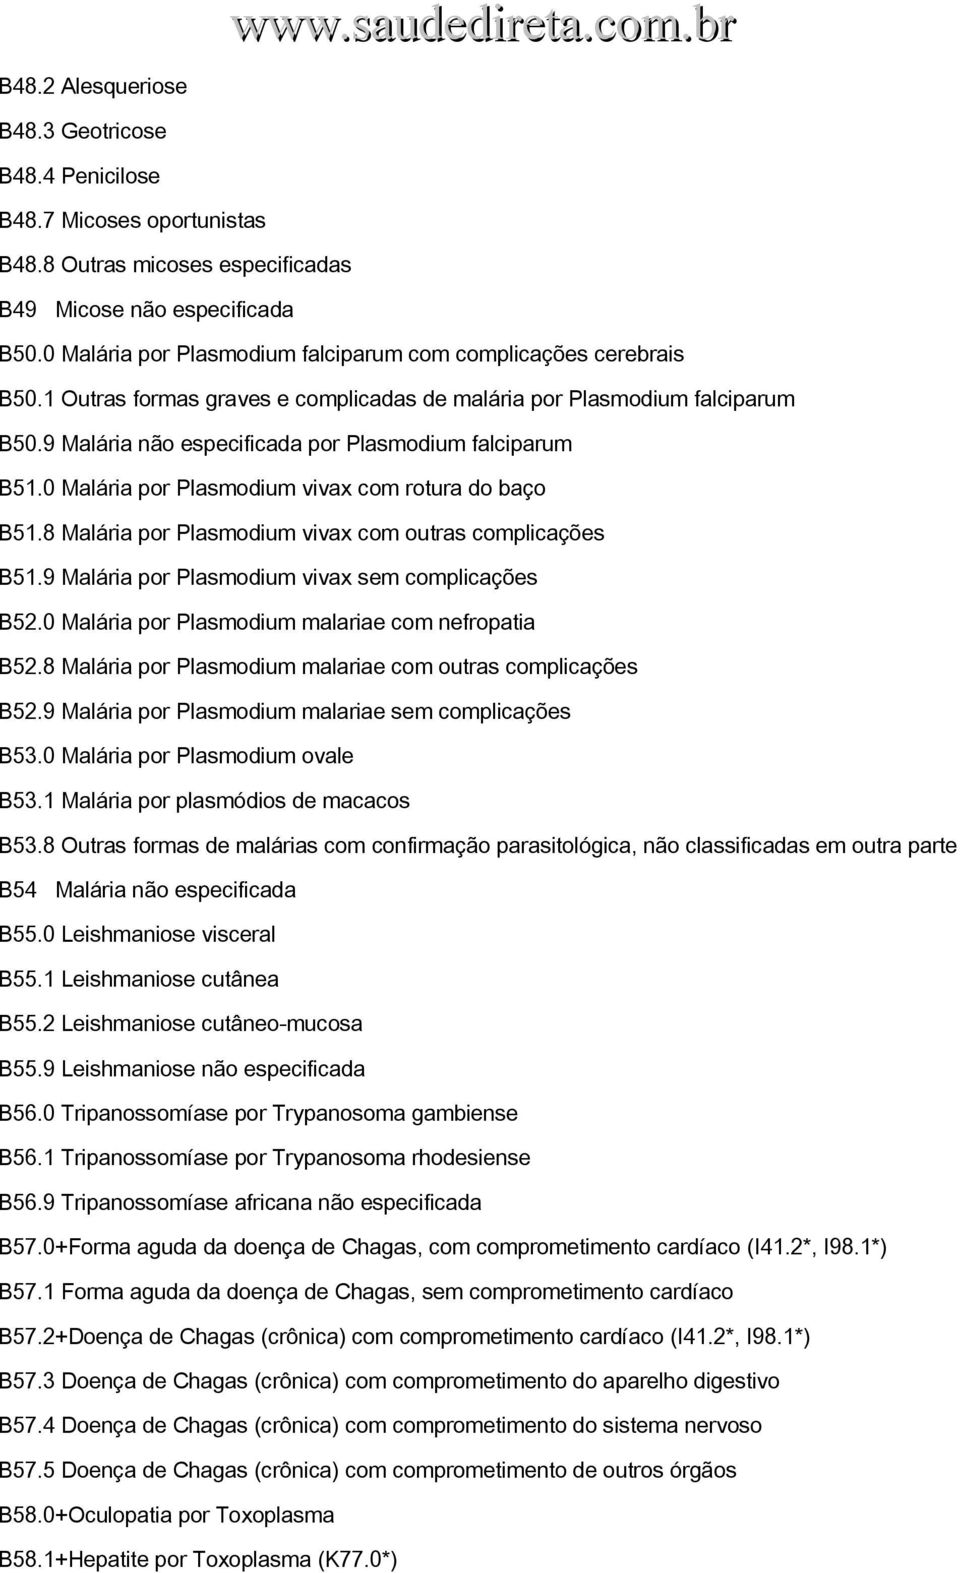 9 Malária não especificada por Plasmodium falciparum B51.0 Malária por Plasmodium vivax com rotura do baço B51.8 Malária por Plasmodium vivax com outras complicações B51.